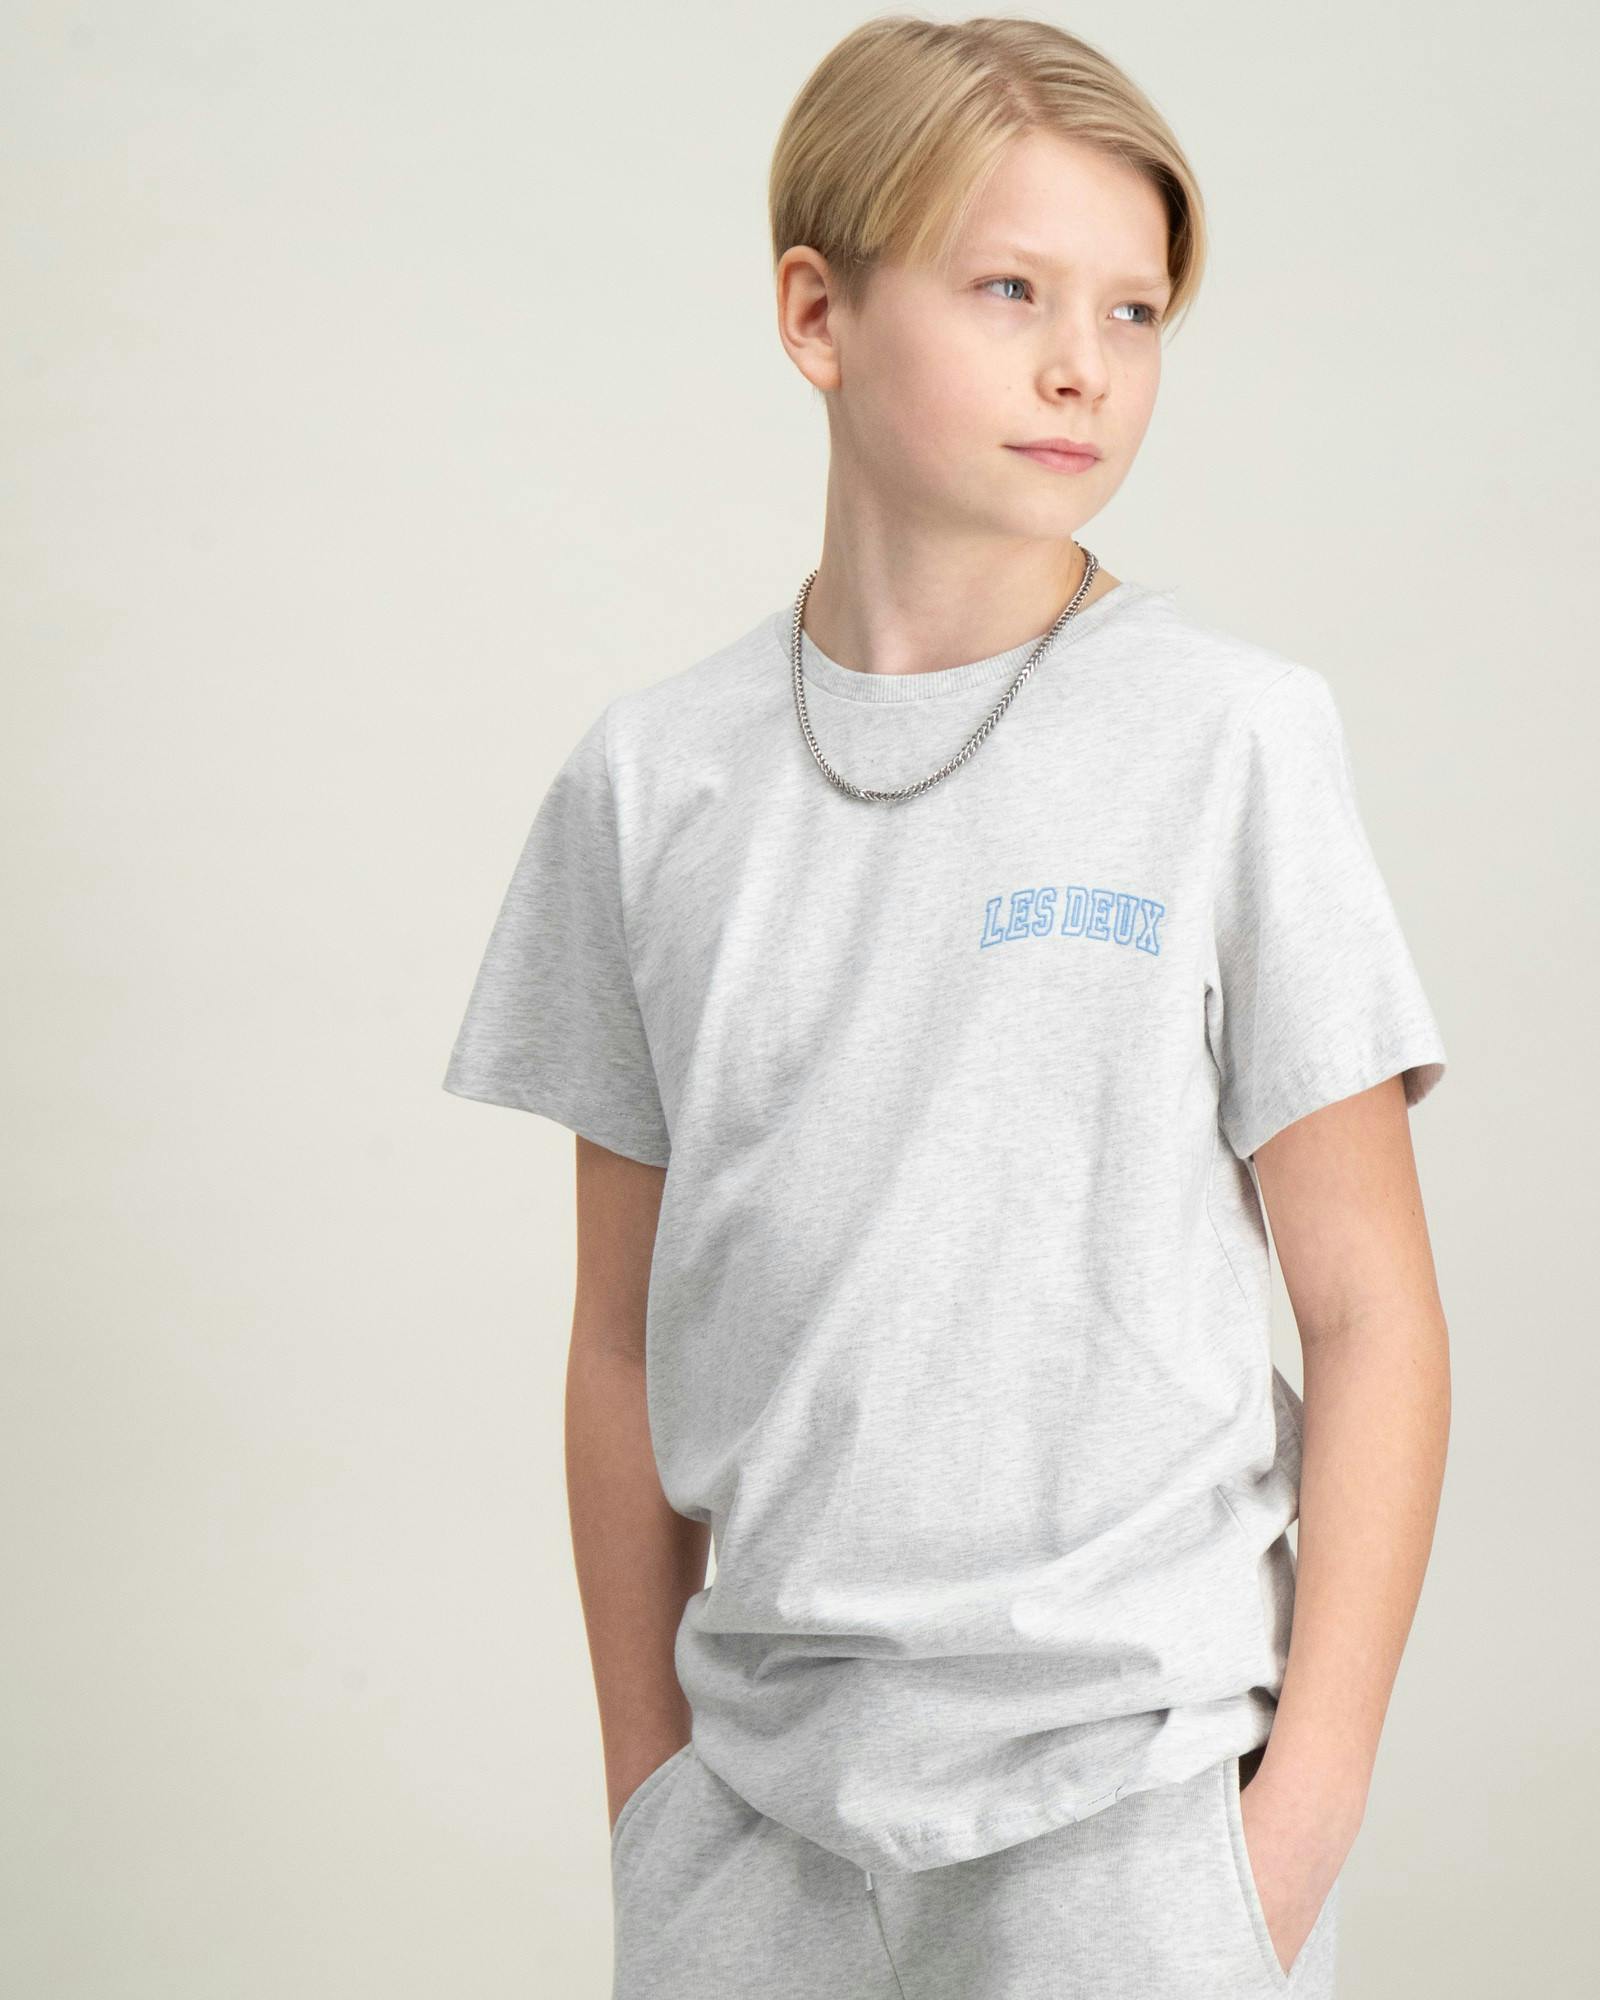 Blake T-Shirt Kids